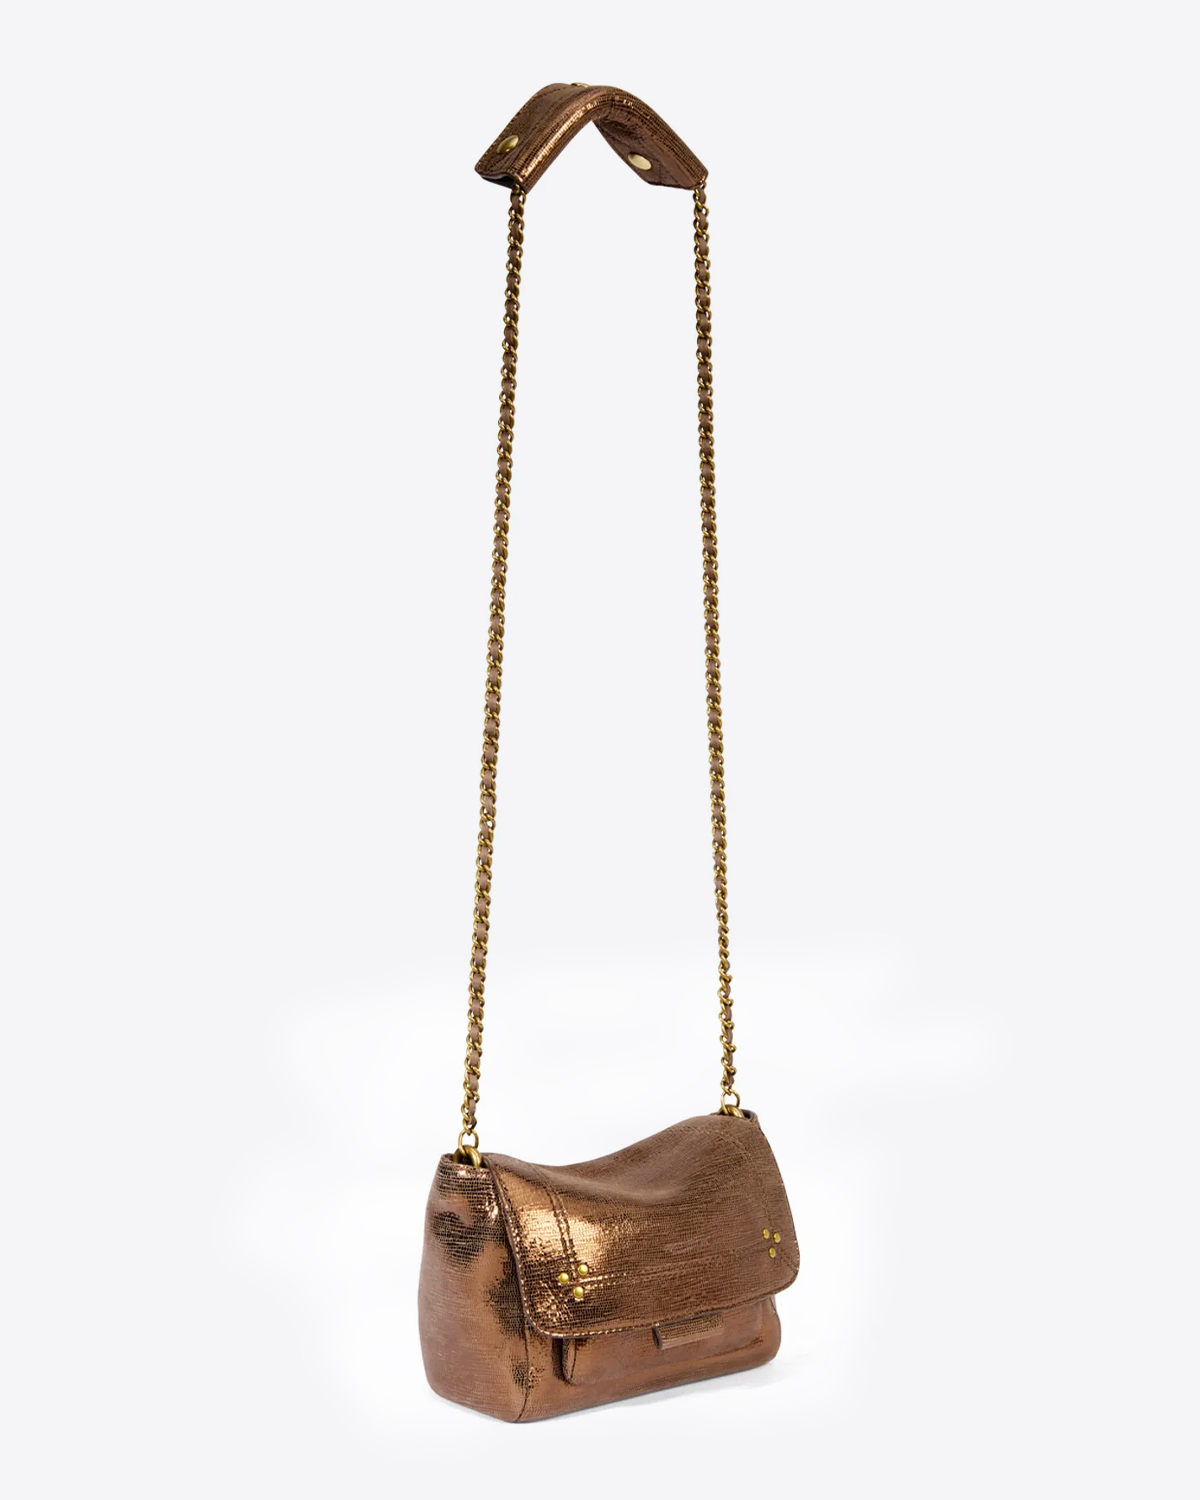 Mini-sac Lulu S Jérôme Dreyfuss en chèvre lamé bronze. Longue chaine dorée.